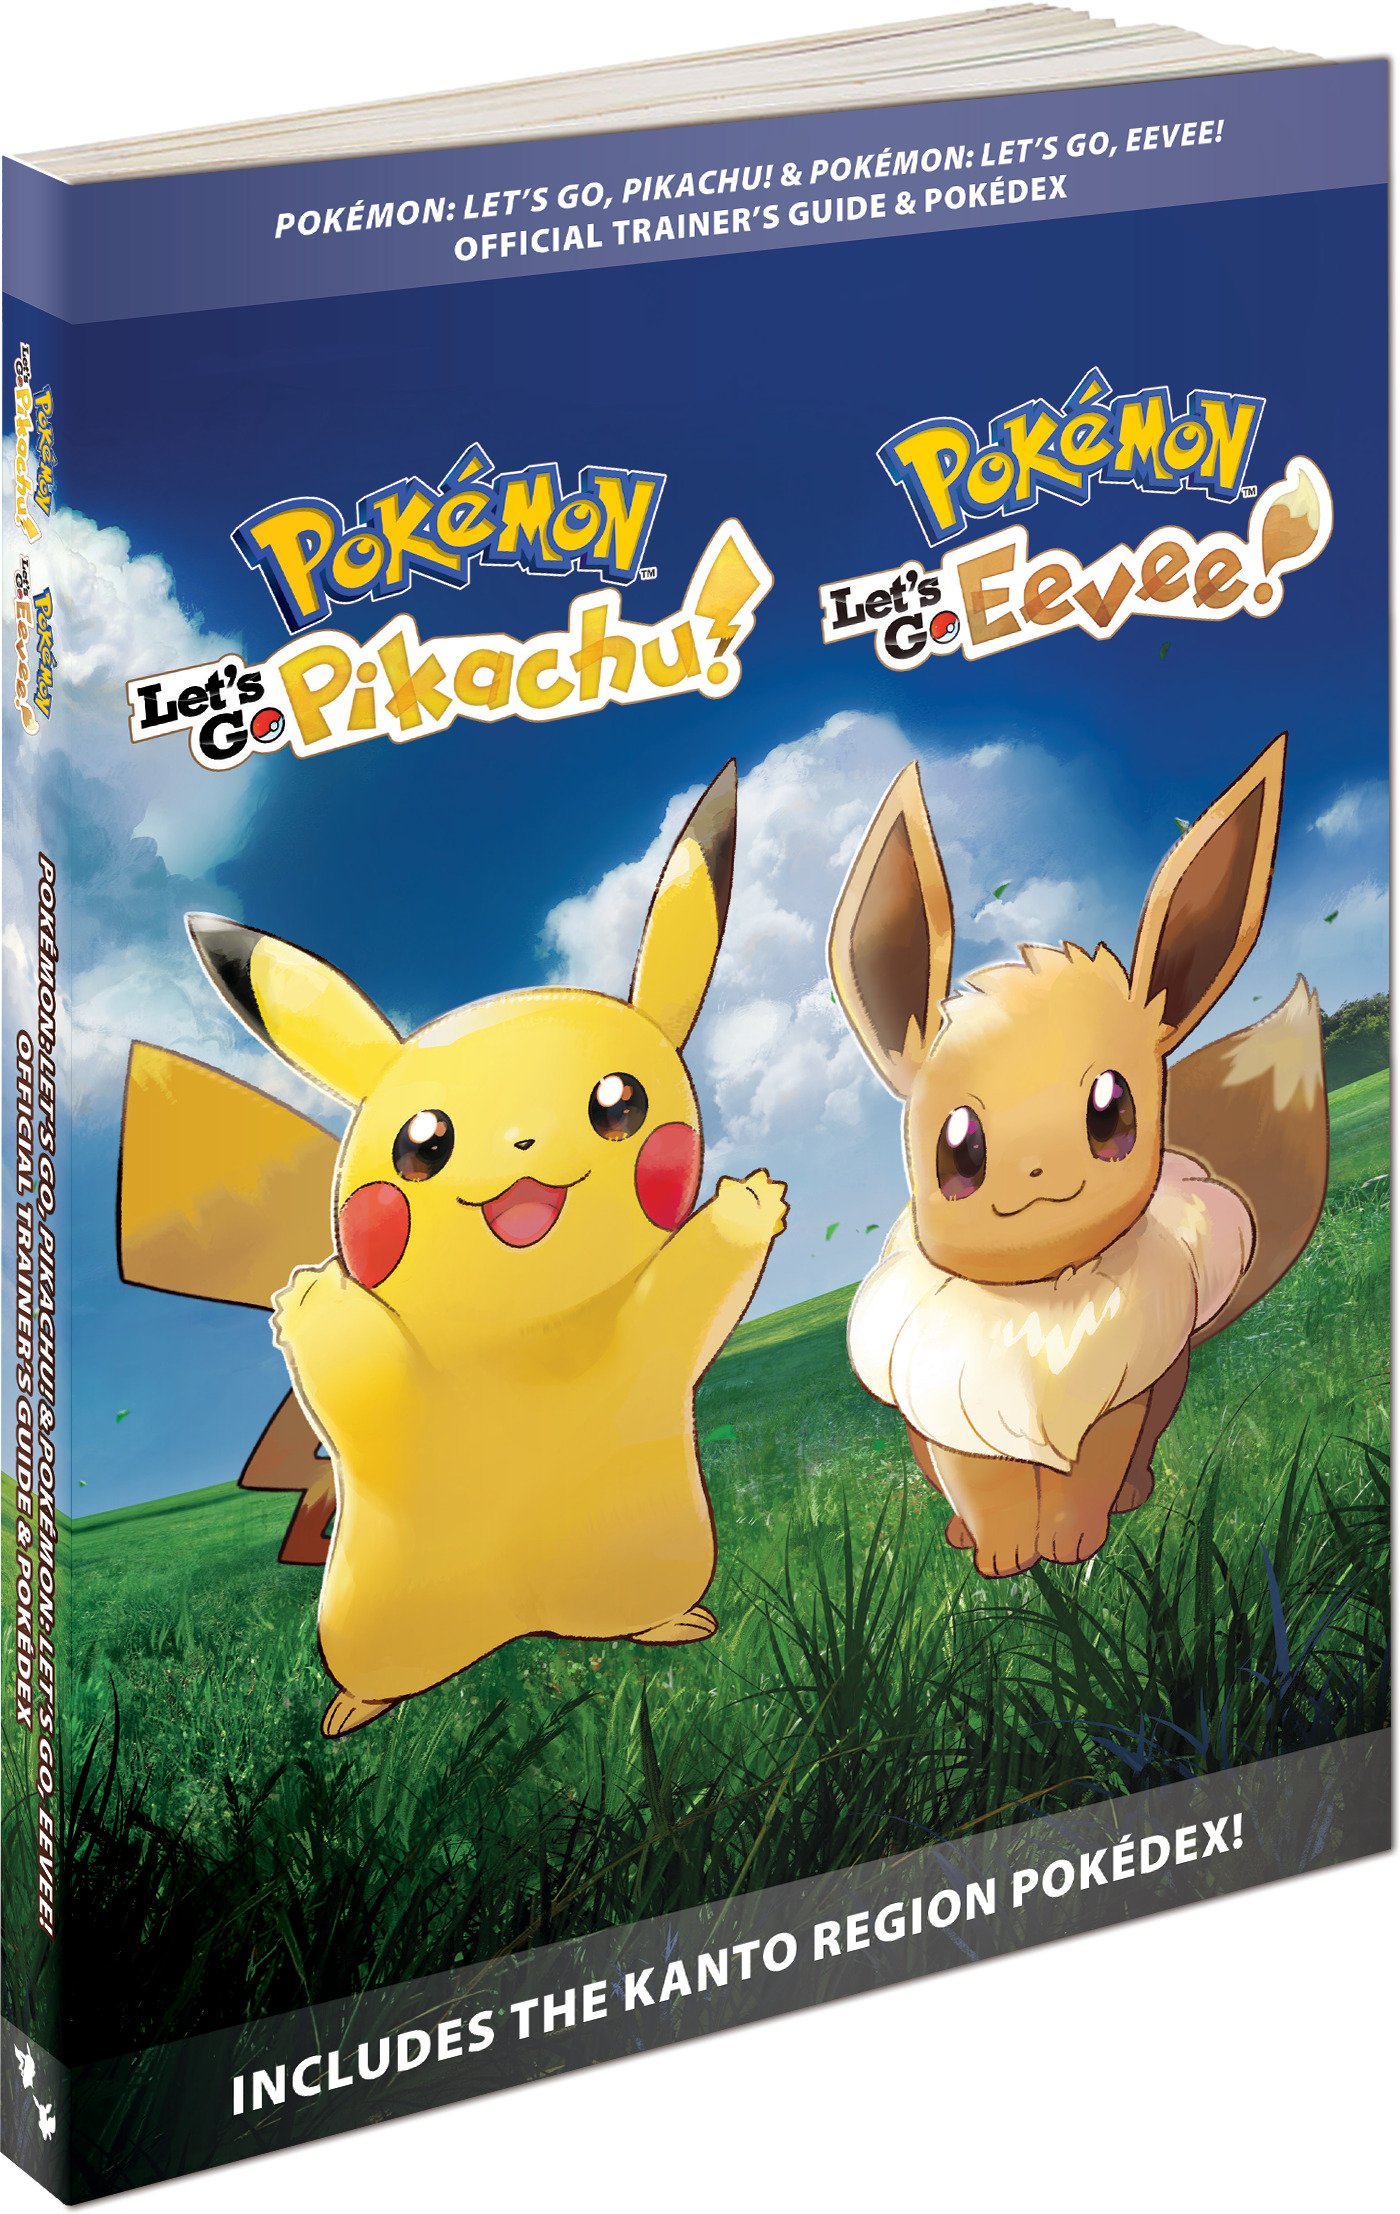 Pokémon Let s Go, Pikachu! & Pokémon Let s Go, Eevee! Official